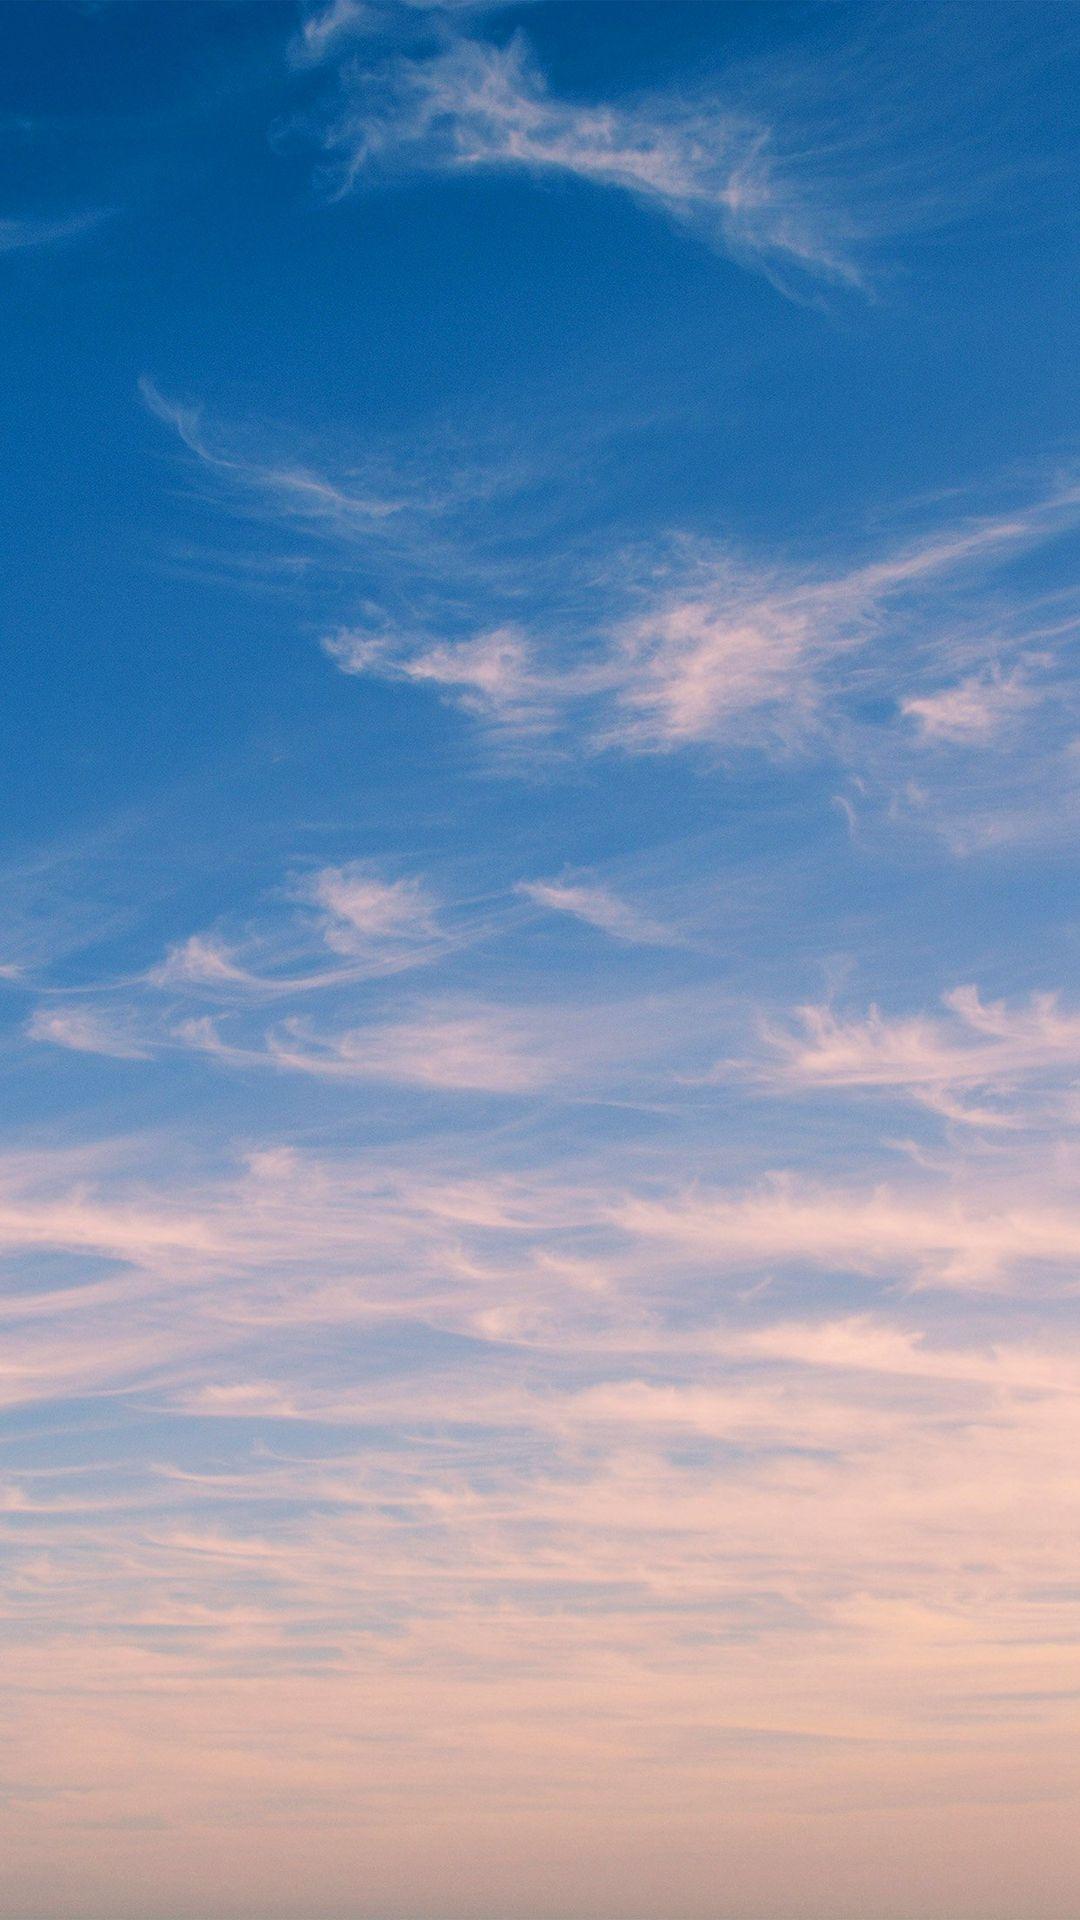 Hãy tưởng tượng một trời đầy động mây màu sắc thay đổi liên tục trên chiếc iPhone của bạn. Cùng khám phá những hình nền động mây trời đẹp mắt và đầy sức hút để làm mới không gian màn hình của bạn.